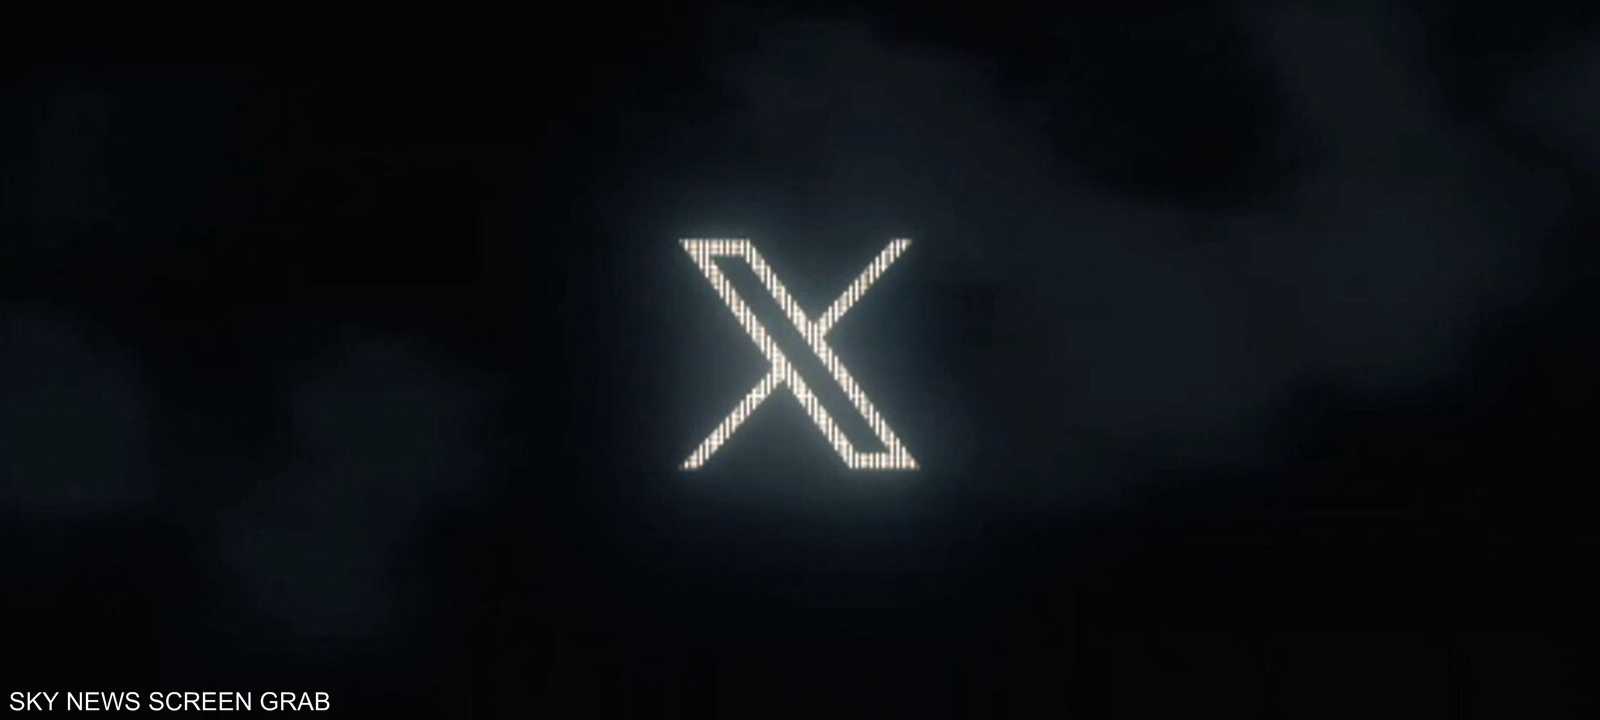 تويتر تستبدل شعار الطائر الأزرق بحرف "x"